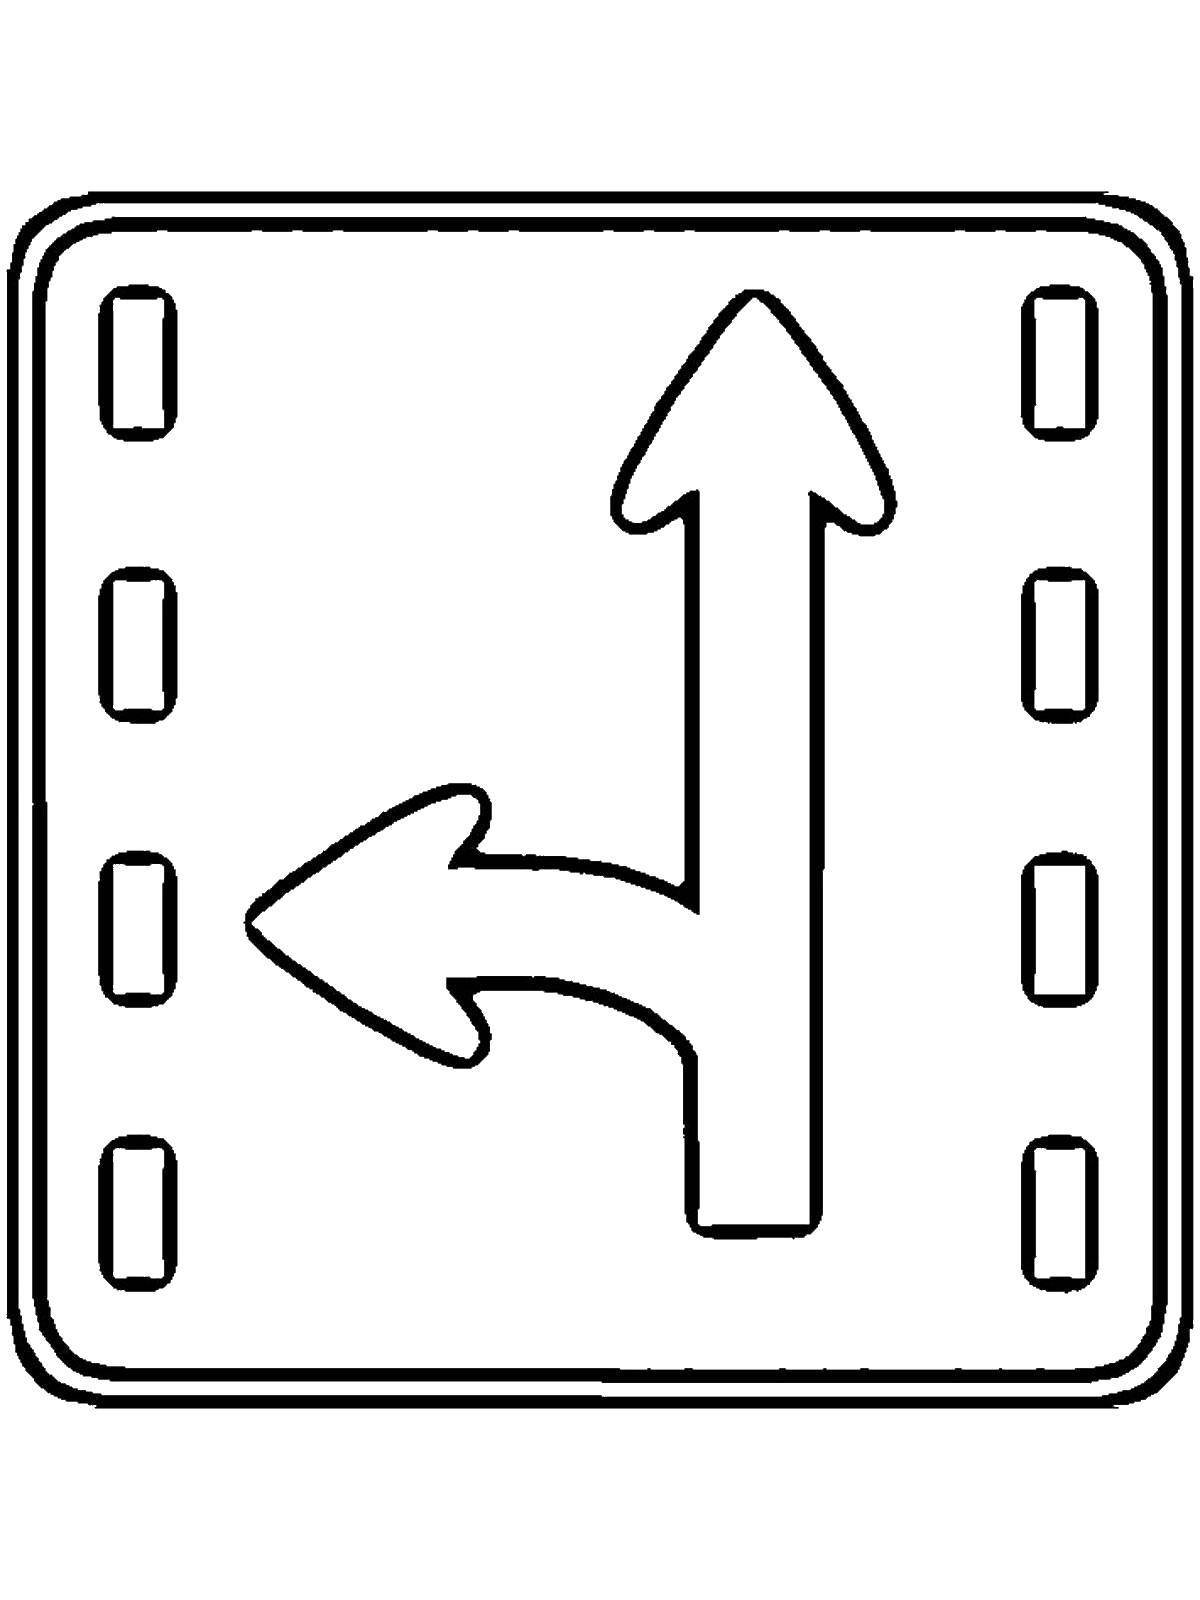 Раскрашенный дорожный знак (знак, правила)